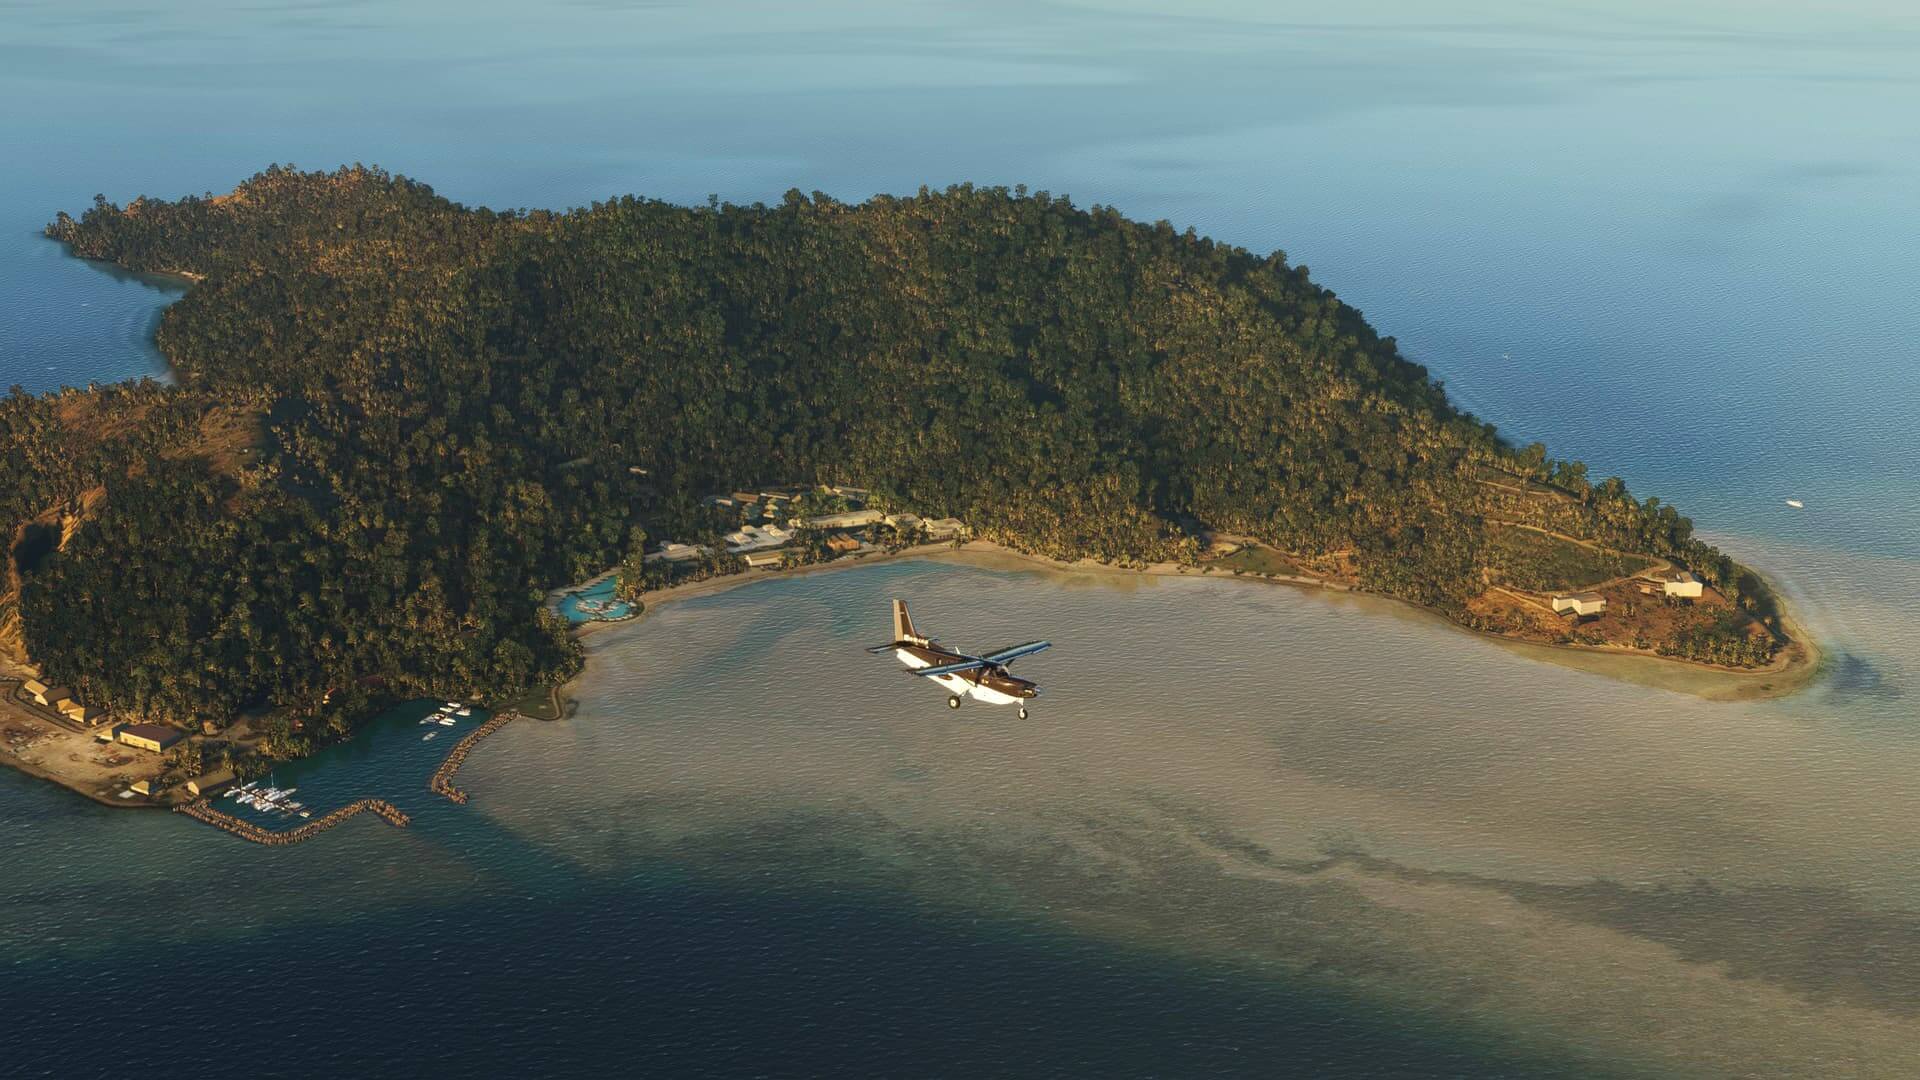 A plane flies over an island.